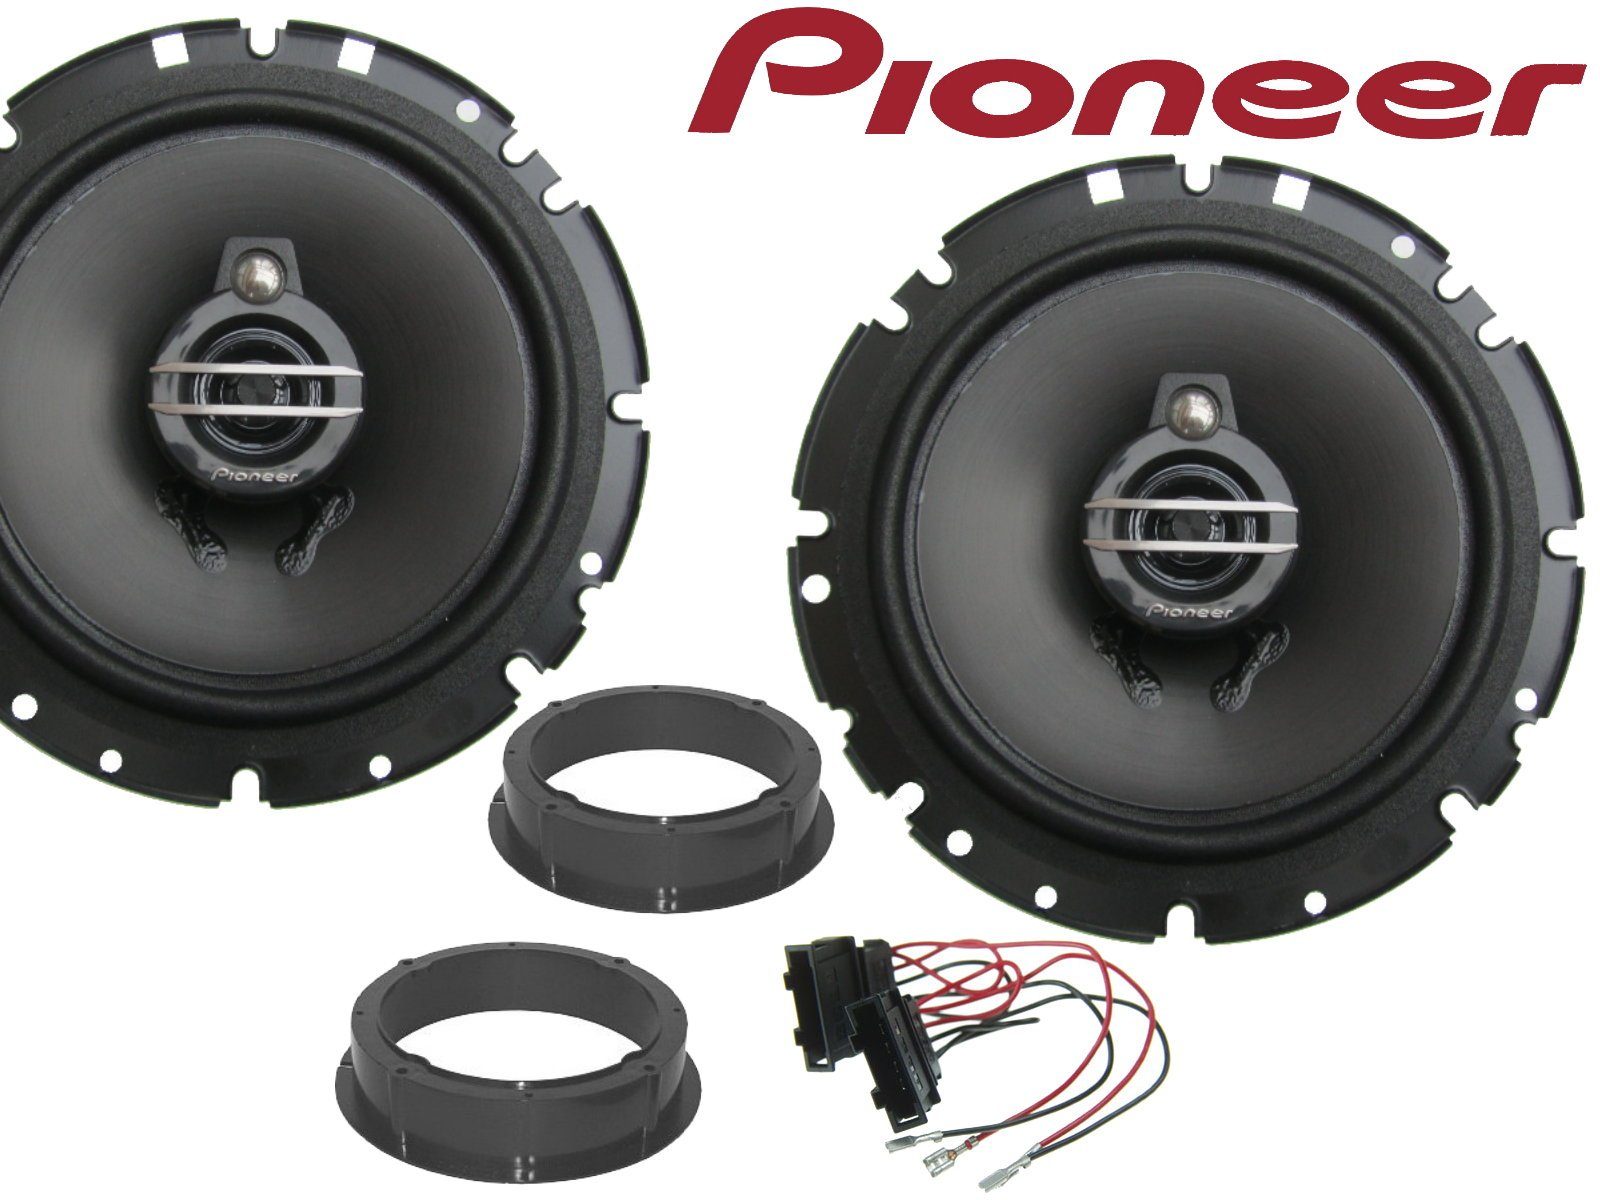 DSX Pioneer 3wege passend für Skoda Fabia 2006 bis 201 Auto-Lautsprecher (40 W) | Auto-Lautsprecher